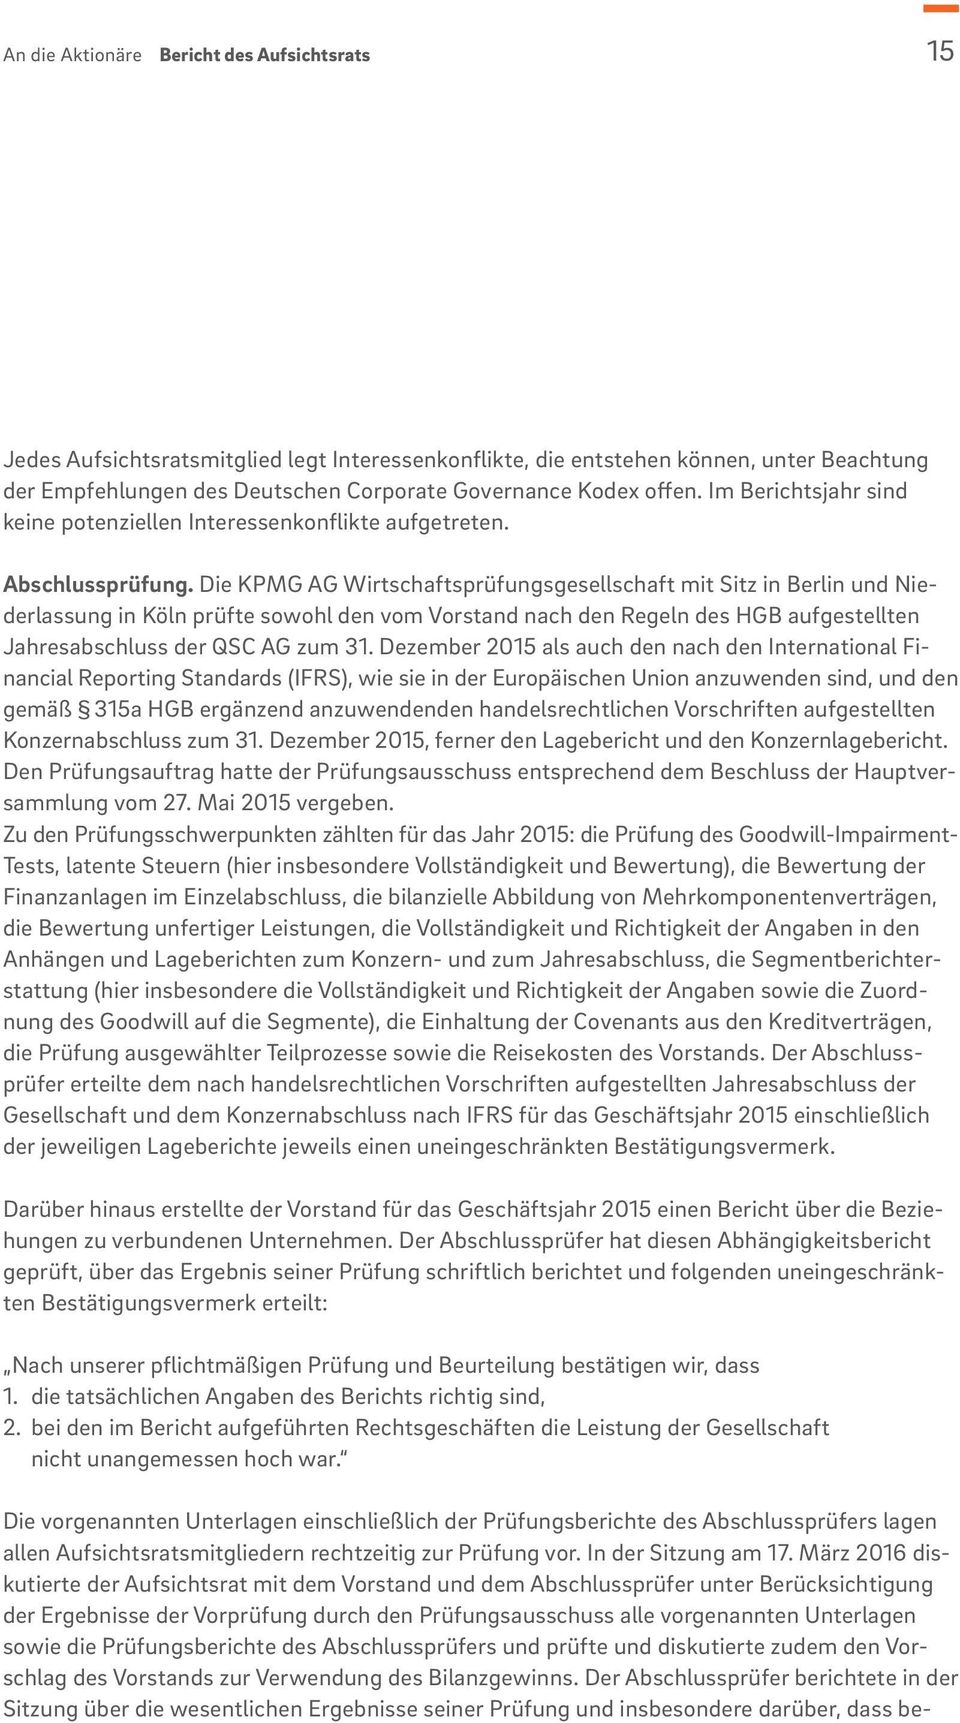 Die KPMG AG Wirtschaftsprüfungsgesellschaft mit Sitz in Berlin und Niederlassung in Köln prüfte sowohl den vom Vorstand nach den Regeln des HGB aufgestellten Jahresabschluss der QSC AG zum 31.